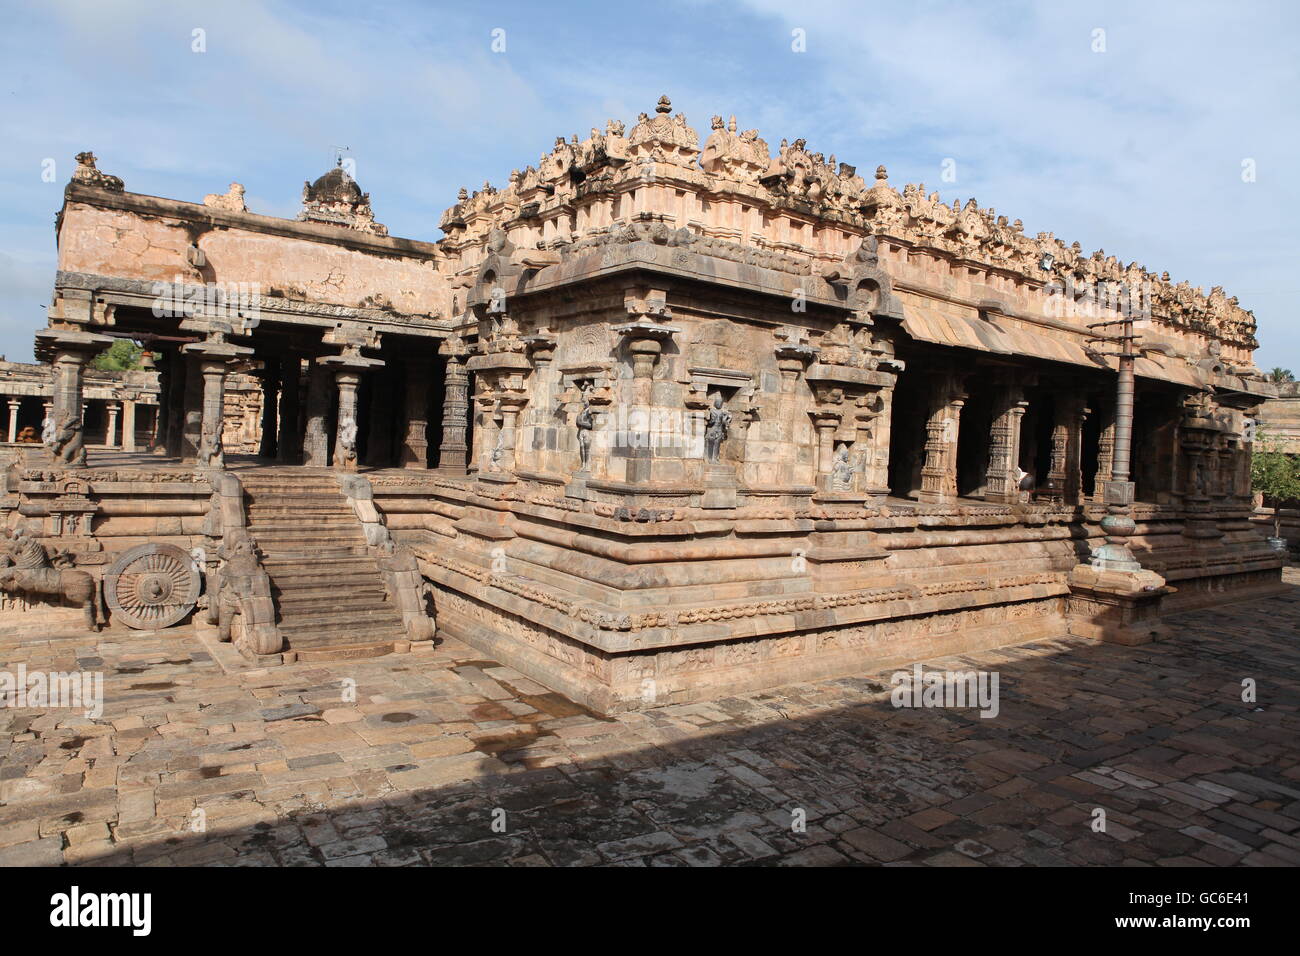 Airavatiswar tempio di darasuram nei pressi di Kumbakonam Foto Stock